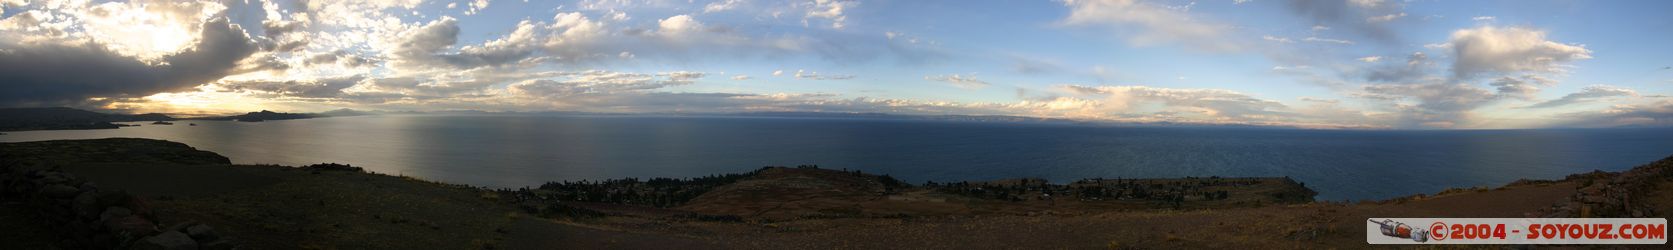 Lago Titicaca - Isla Amantani - Sunset - panorama
Mots-clés: peru sunset Lac panorama